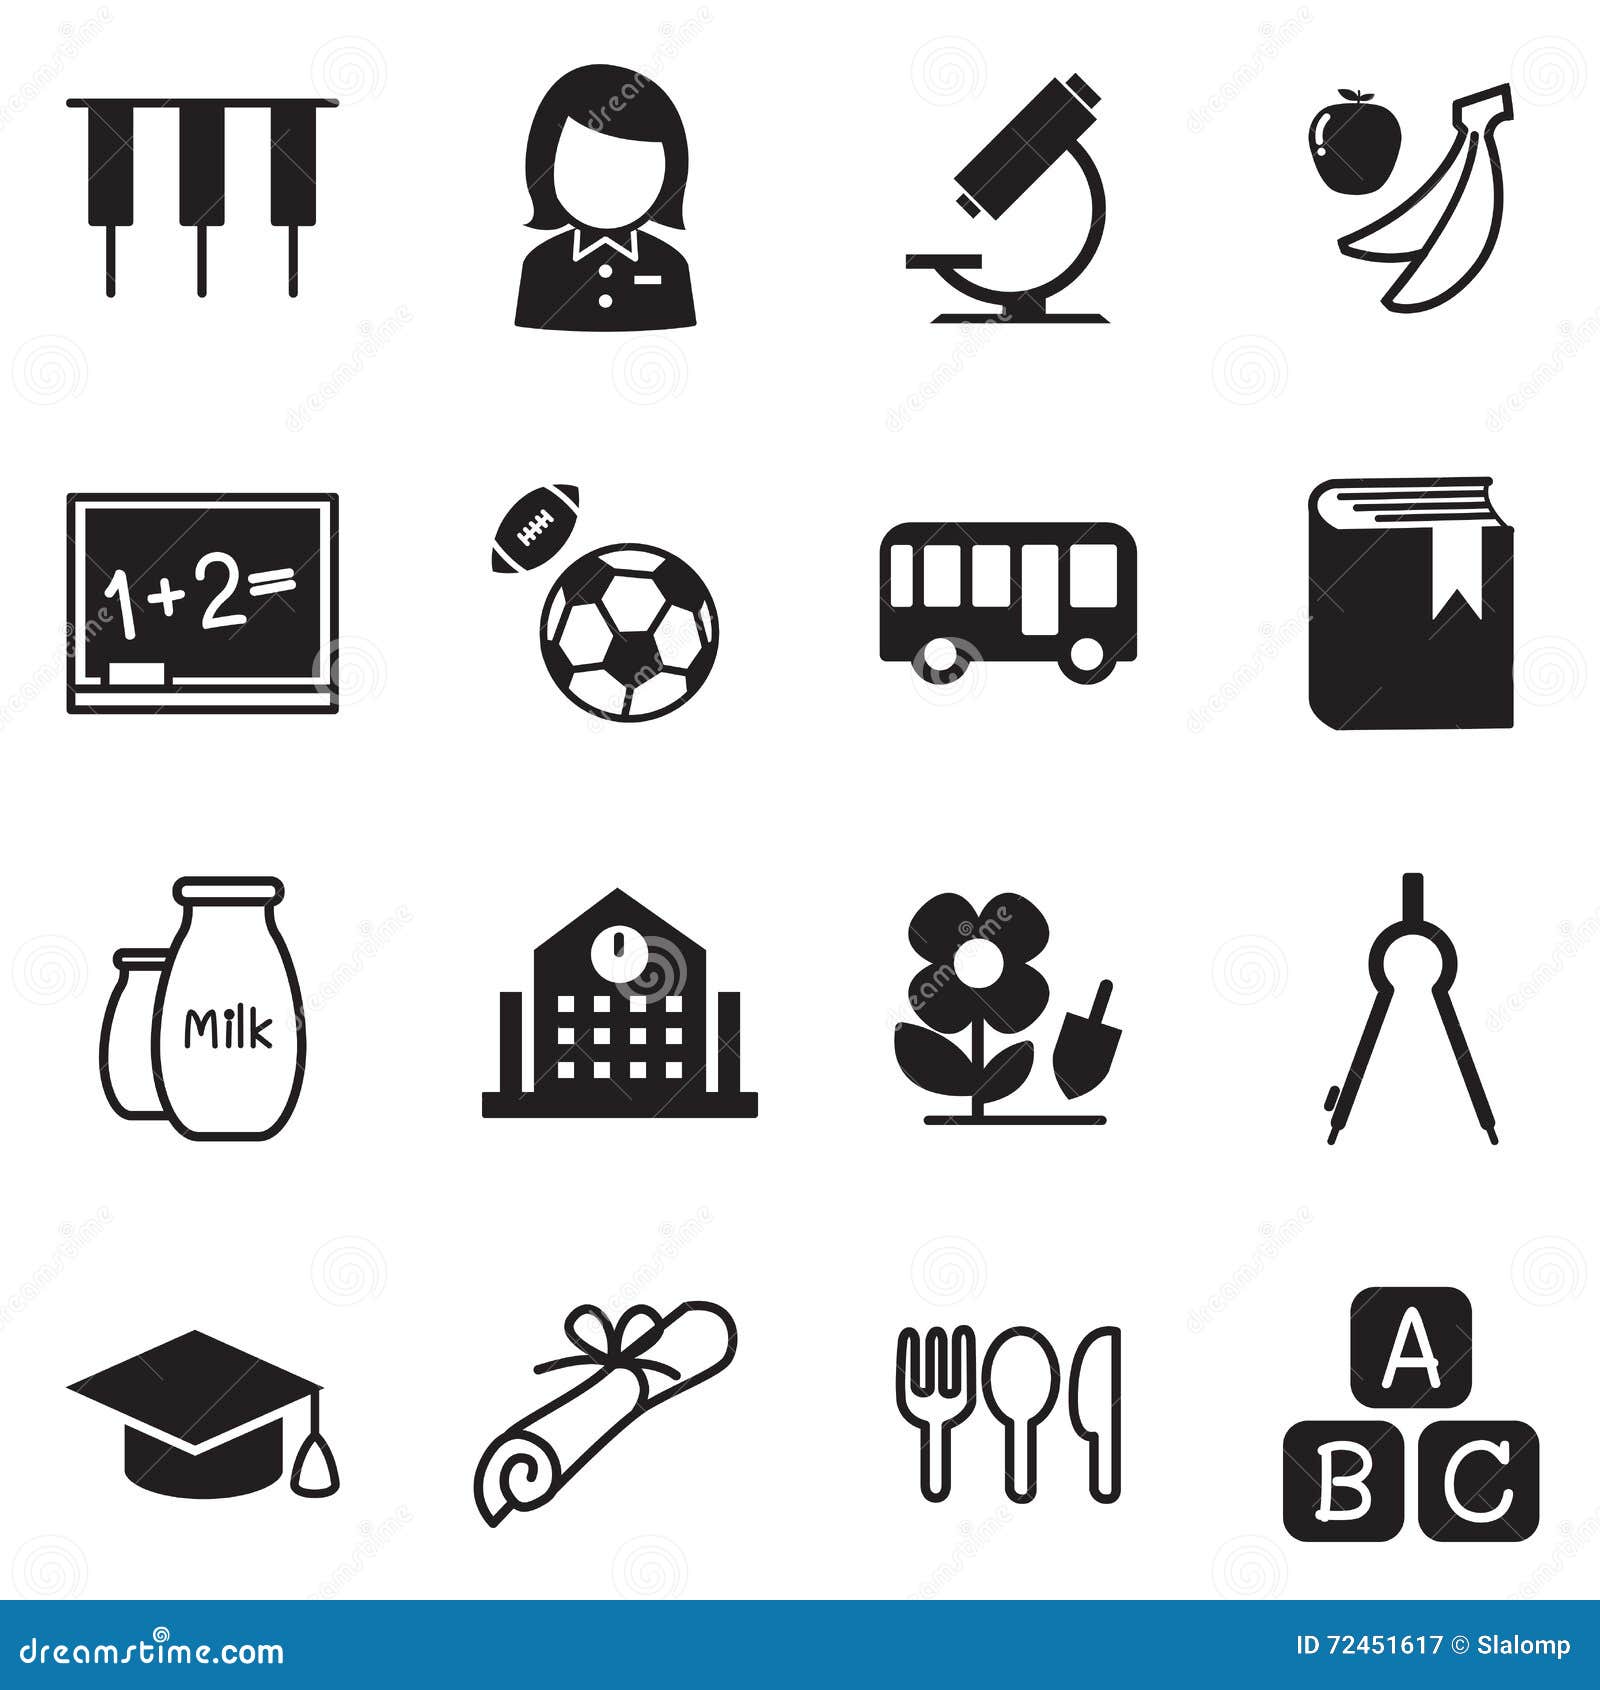 Διανυσματικό σύμβολο 2 απεικόνισης εικονιδίων σχολικής εκπαίδευσης παιδικών σταθμών. Παιδικών σταθμών σχολικής εκπαίδευσης γραφικό σχέδιο απεικόνισης εικονιδίων διανυσματικό